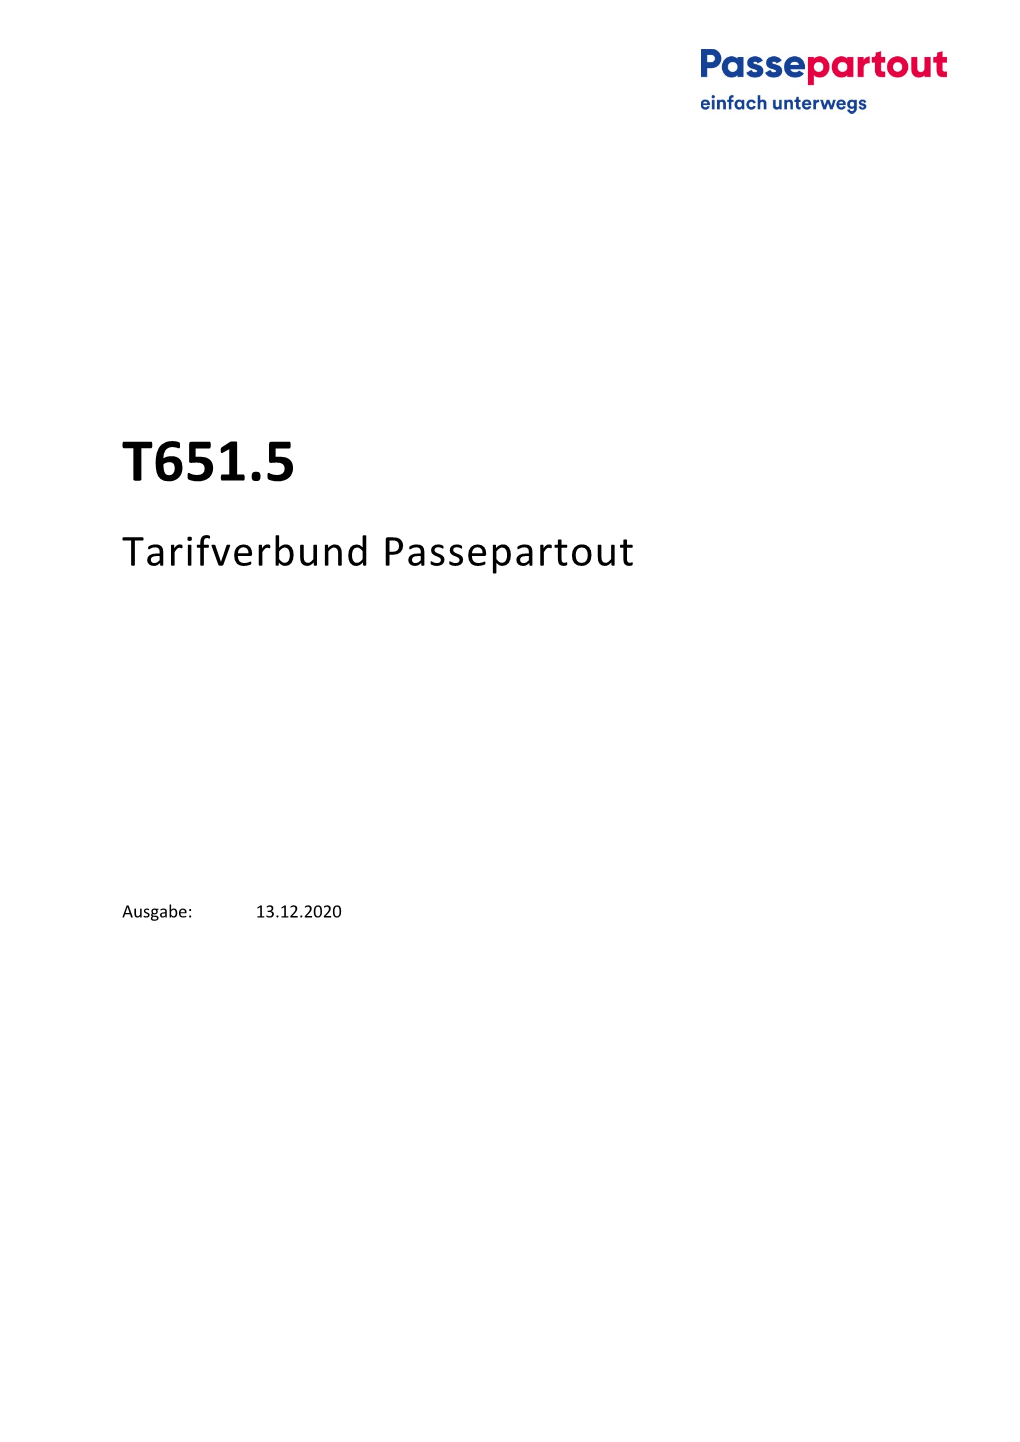 T651.5 Tarifverbund Passepartout